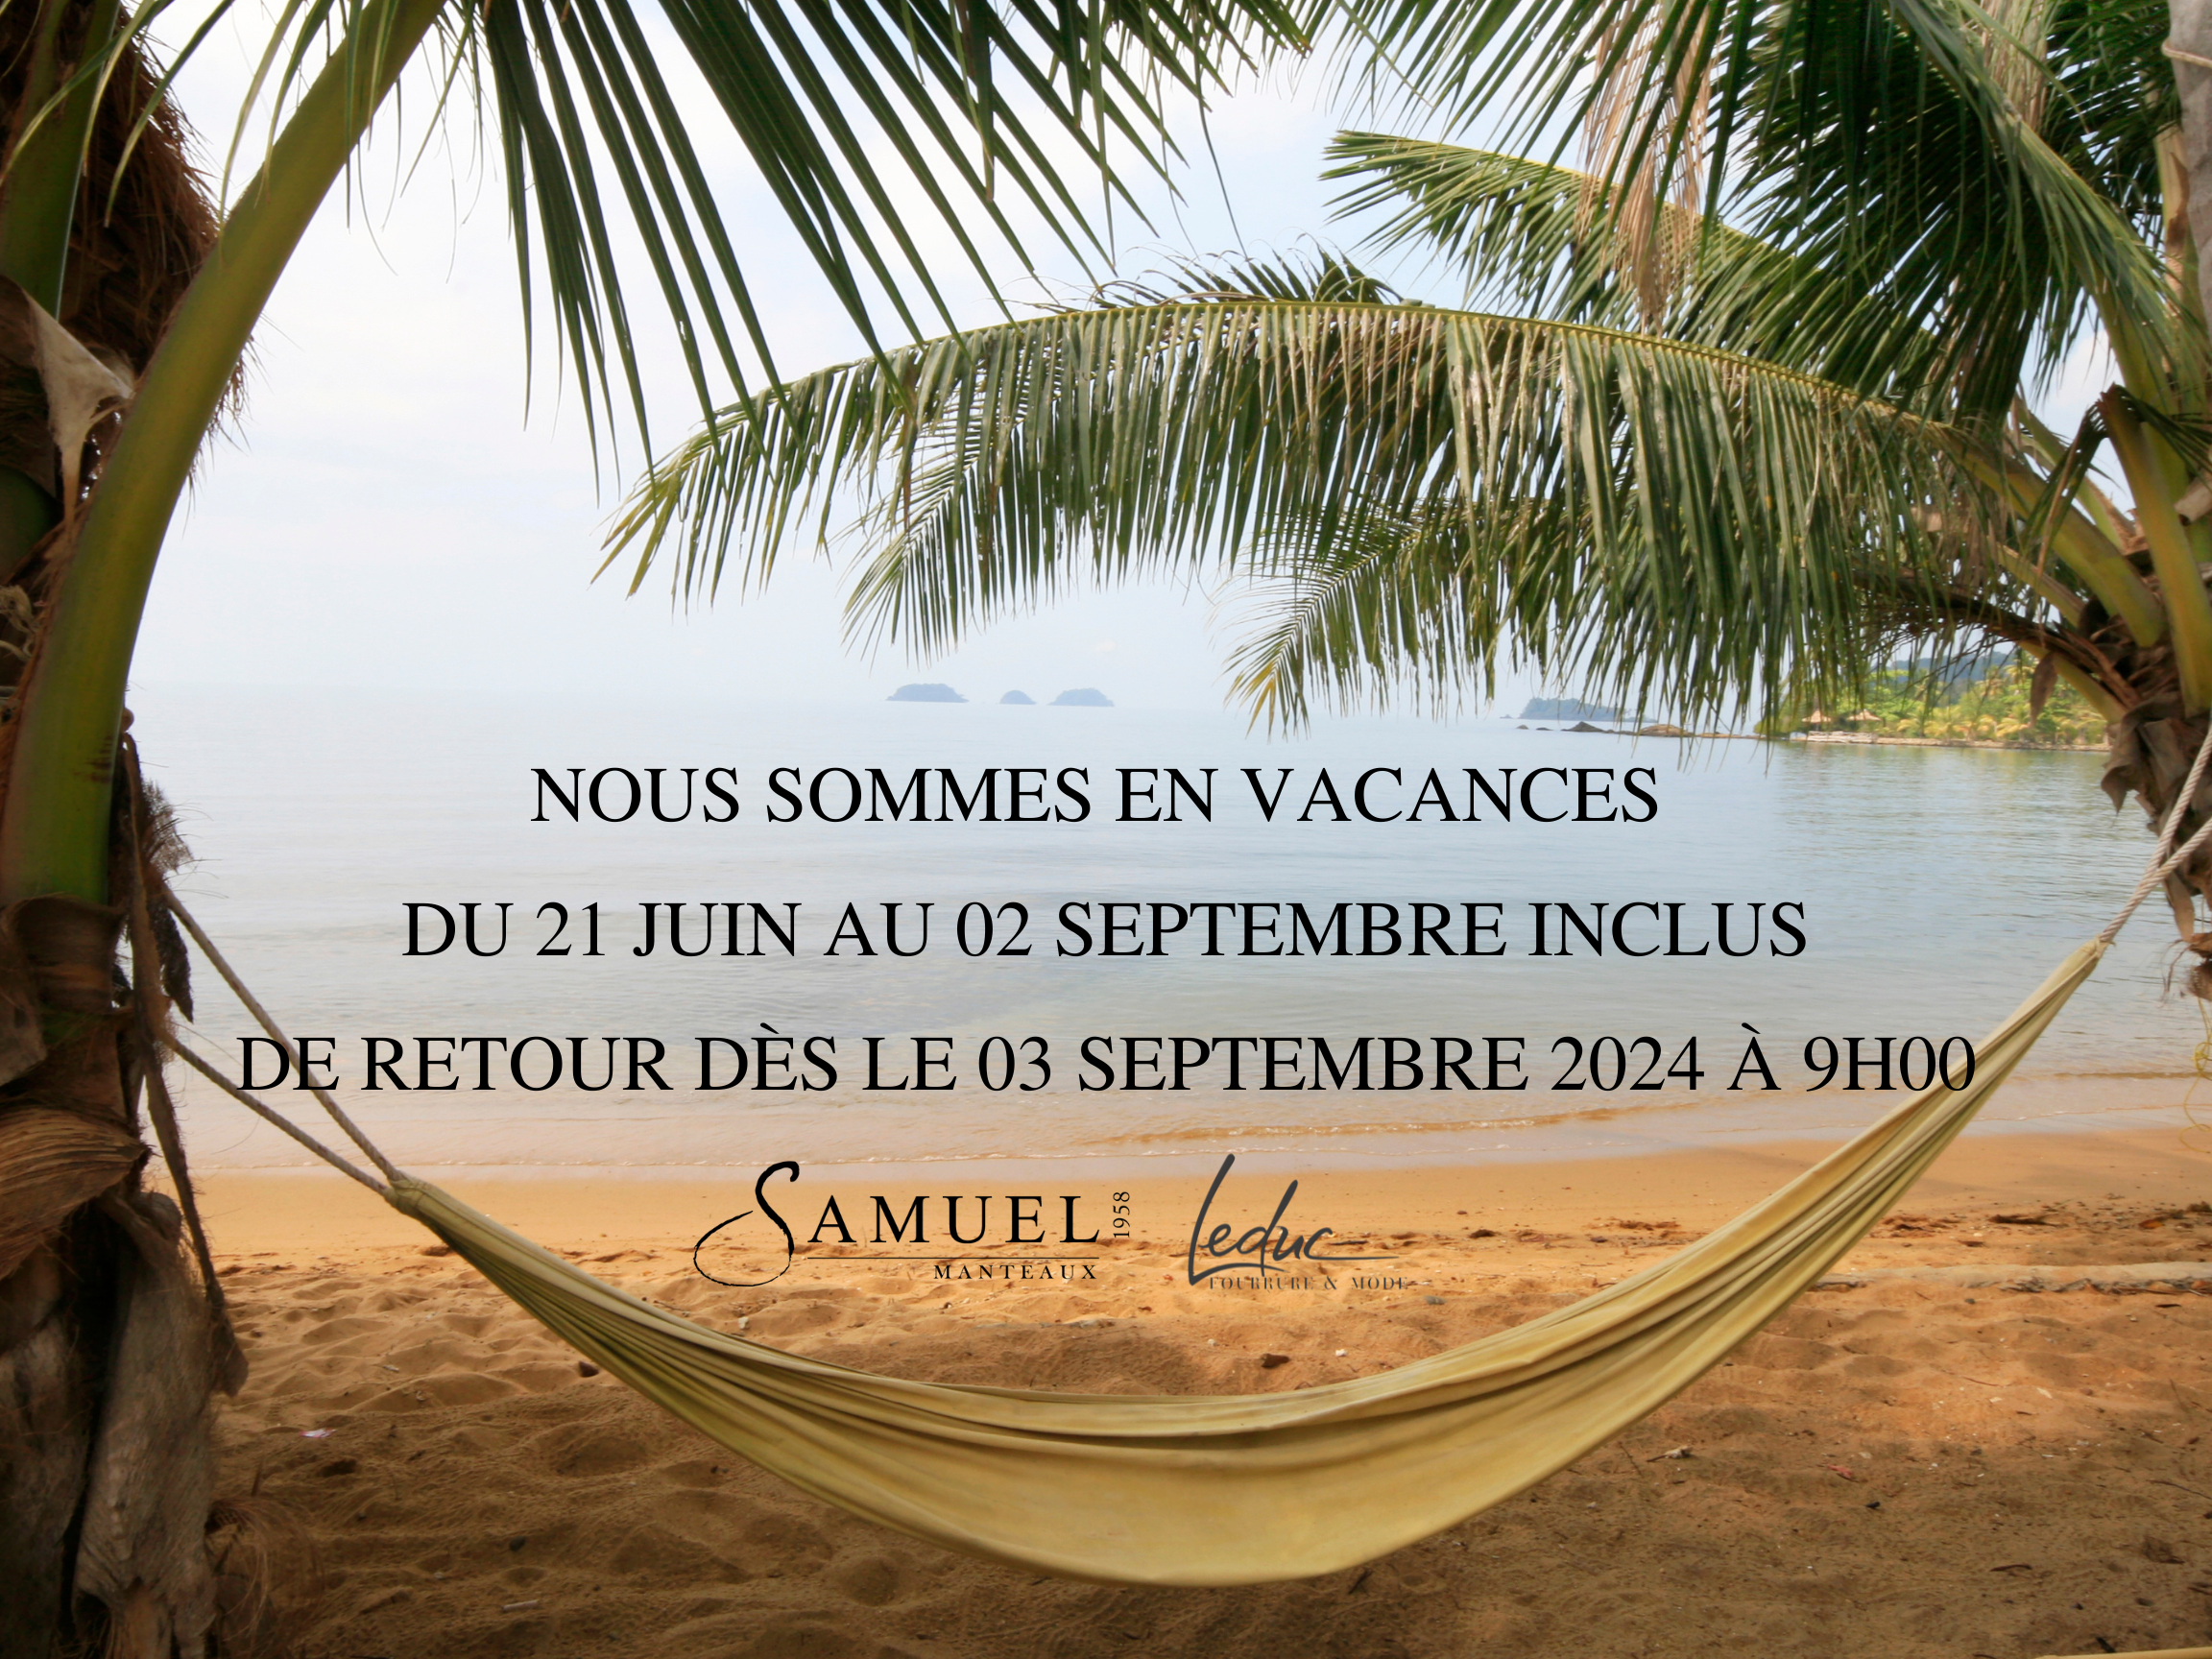  samuel vacances site web 2023 (3)